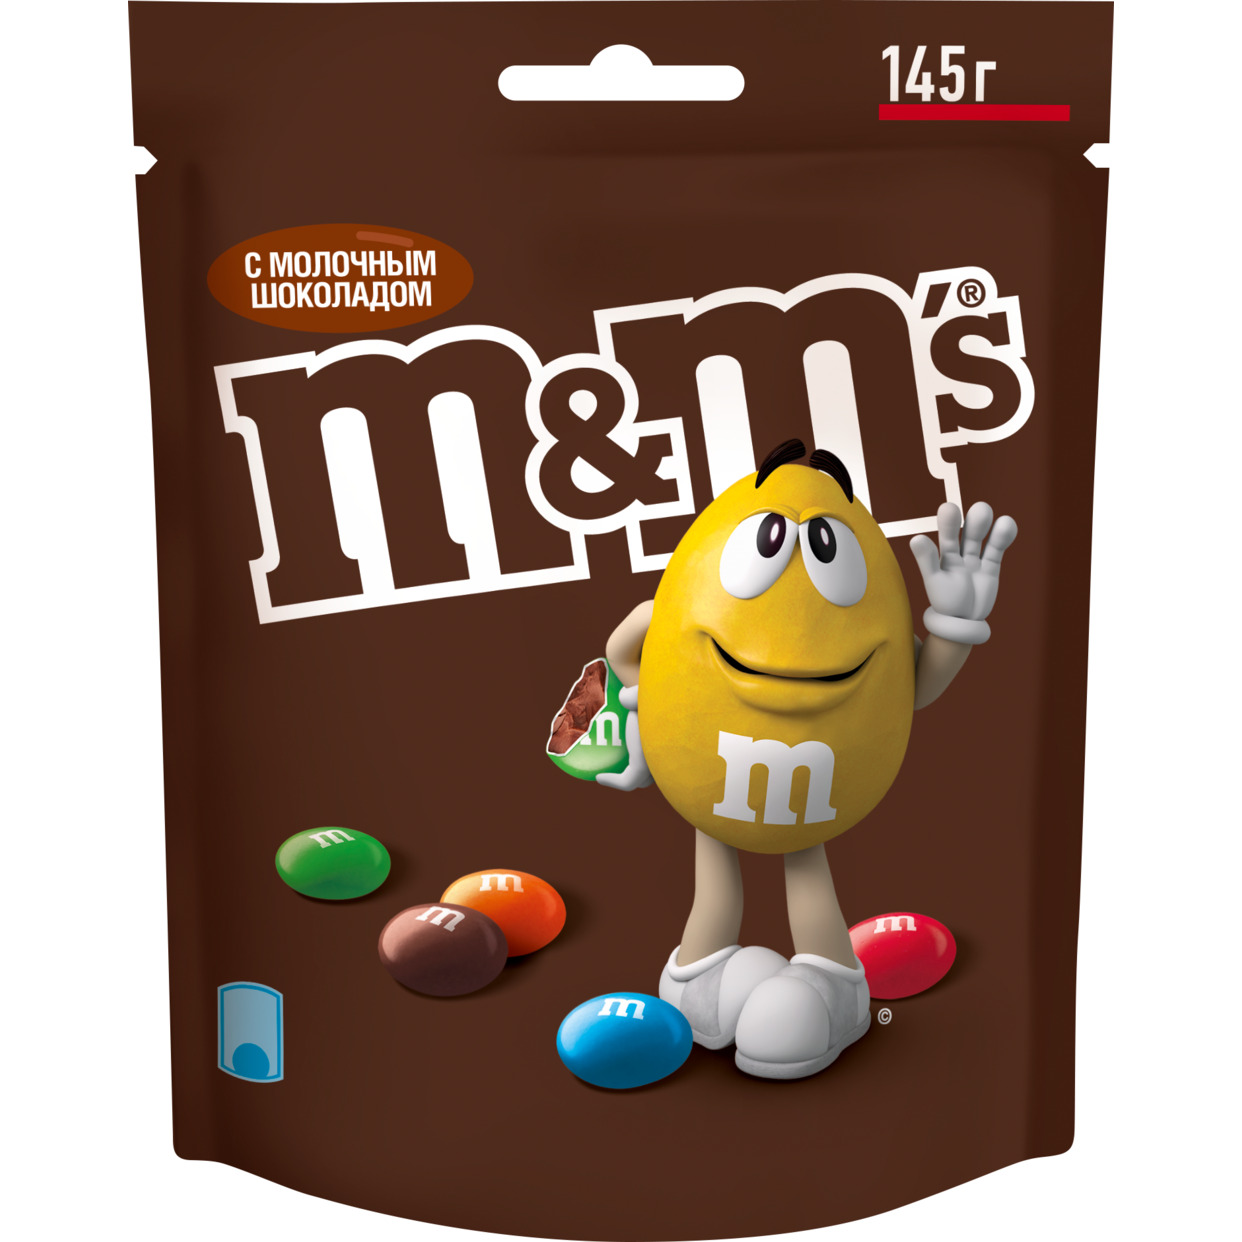 Драже M&Ms с молочным шоколадом, покрытое хрустящей разноцветной глазурью, 145г.